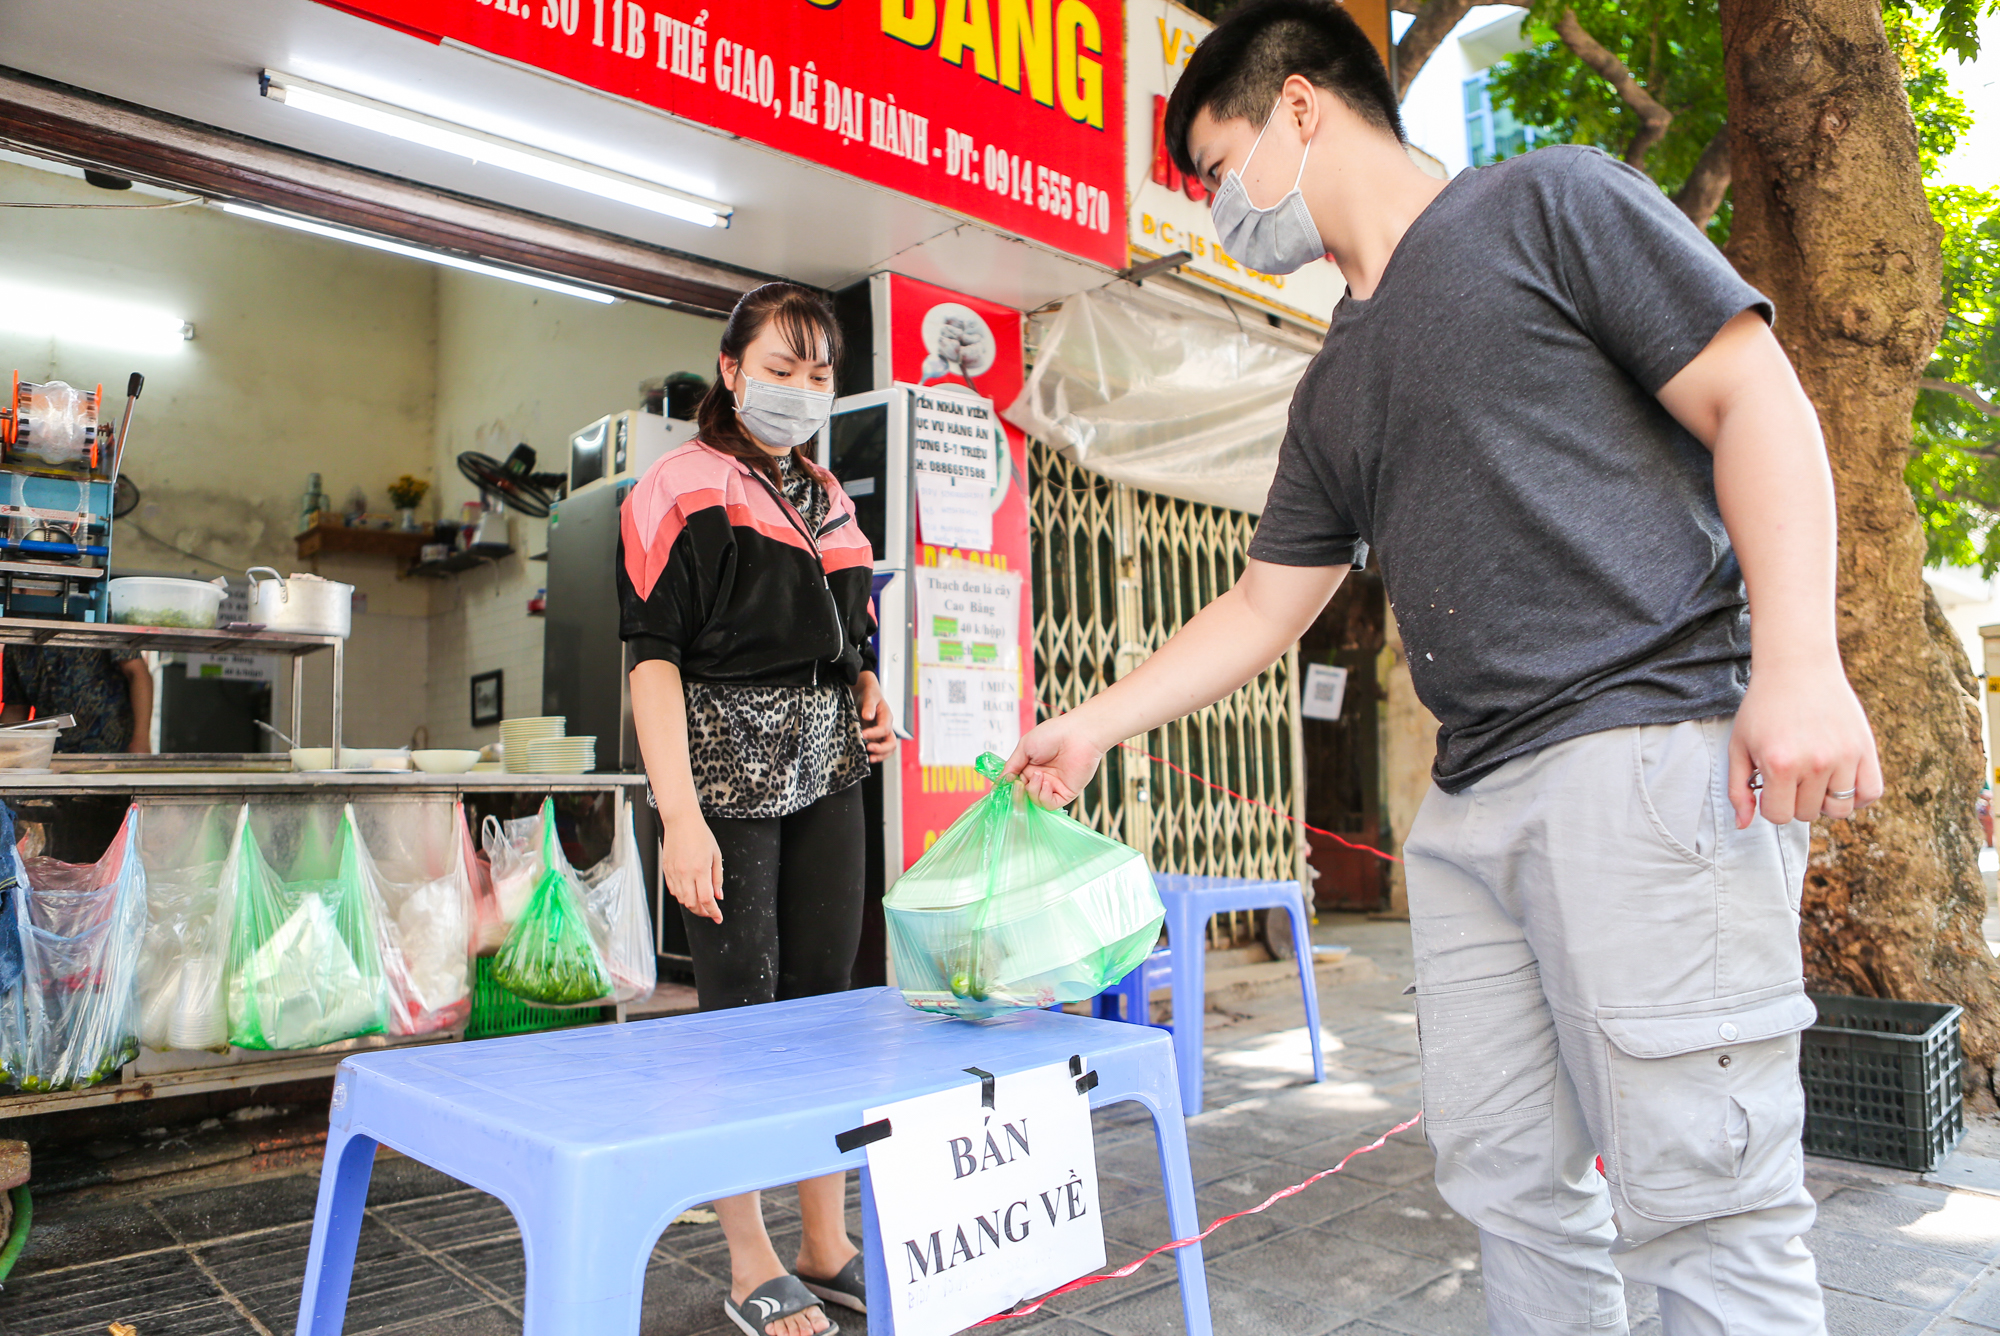 CLIP: Thêm một quận của Hà Nội cho phép các quán ăn chỉ bán hàng mang về - Ảnh 8.